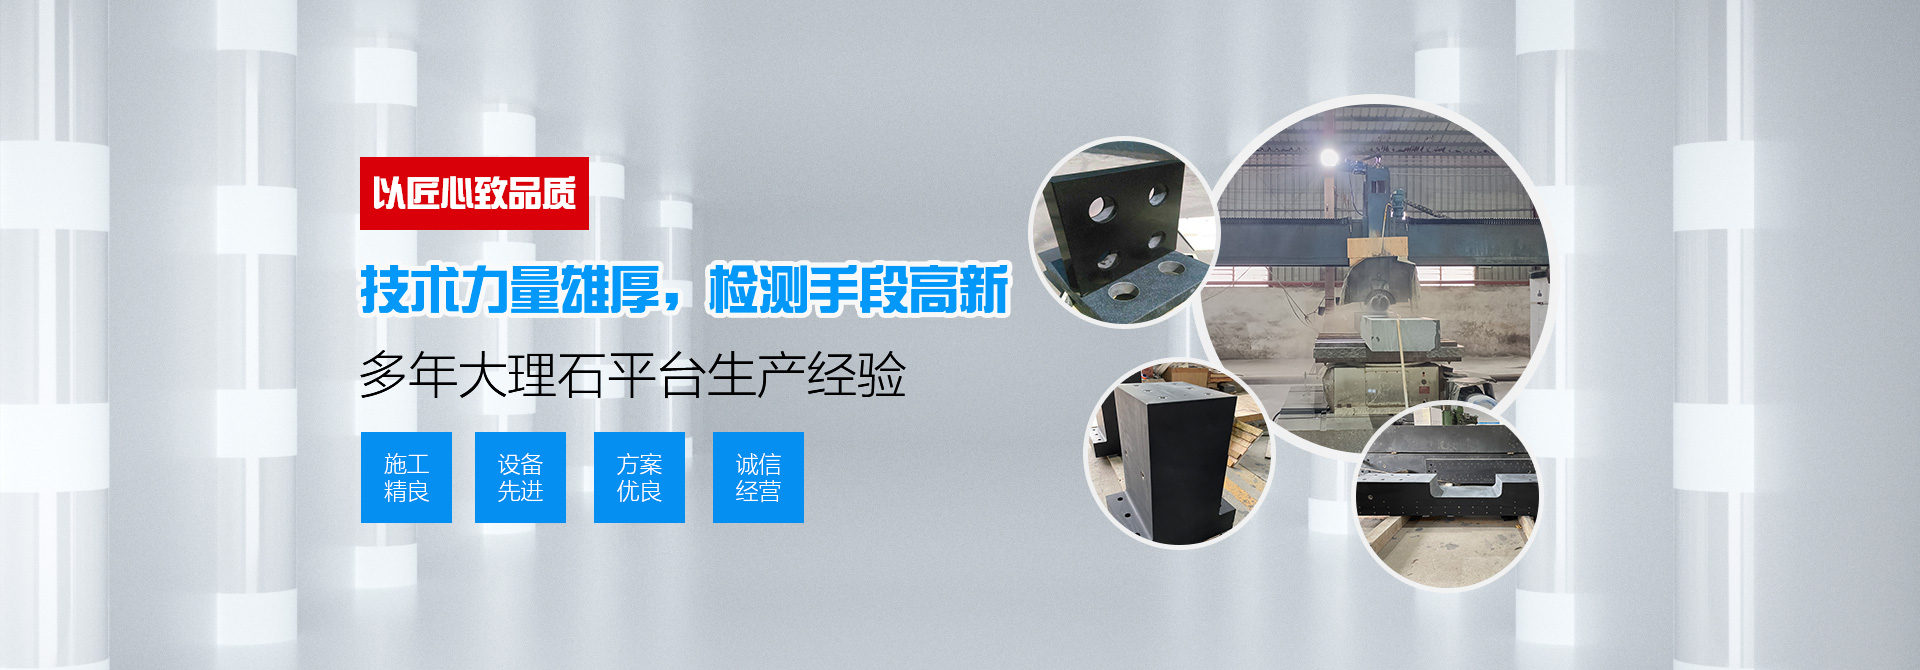 惠州市宏磊精密机械设备有限公司